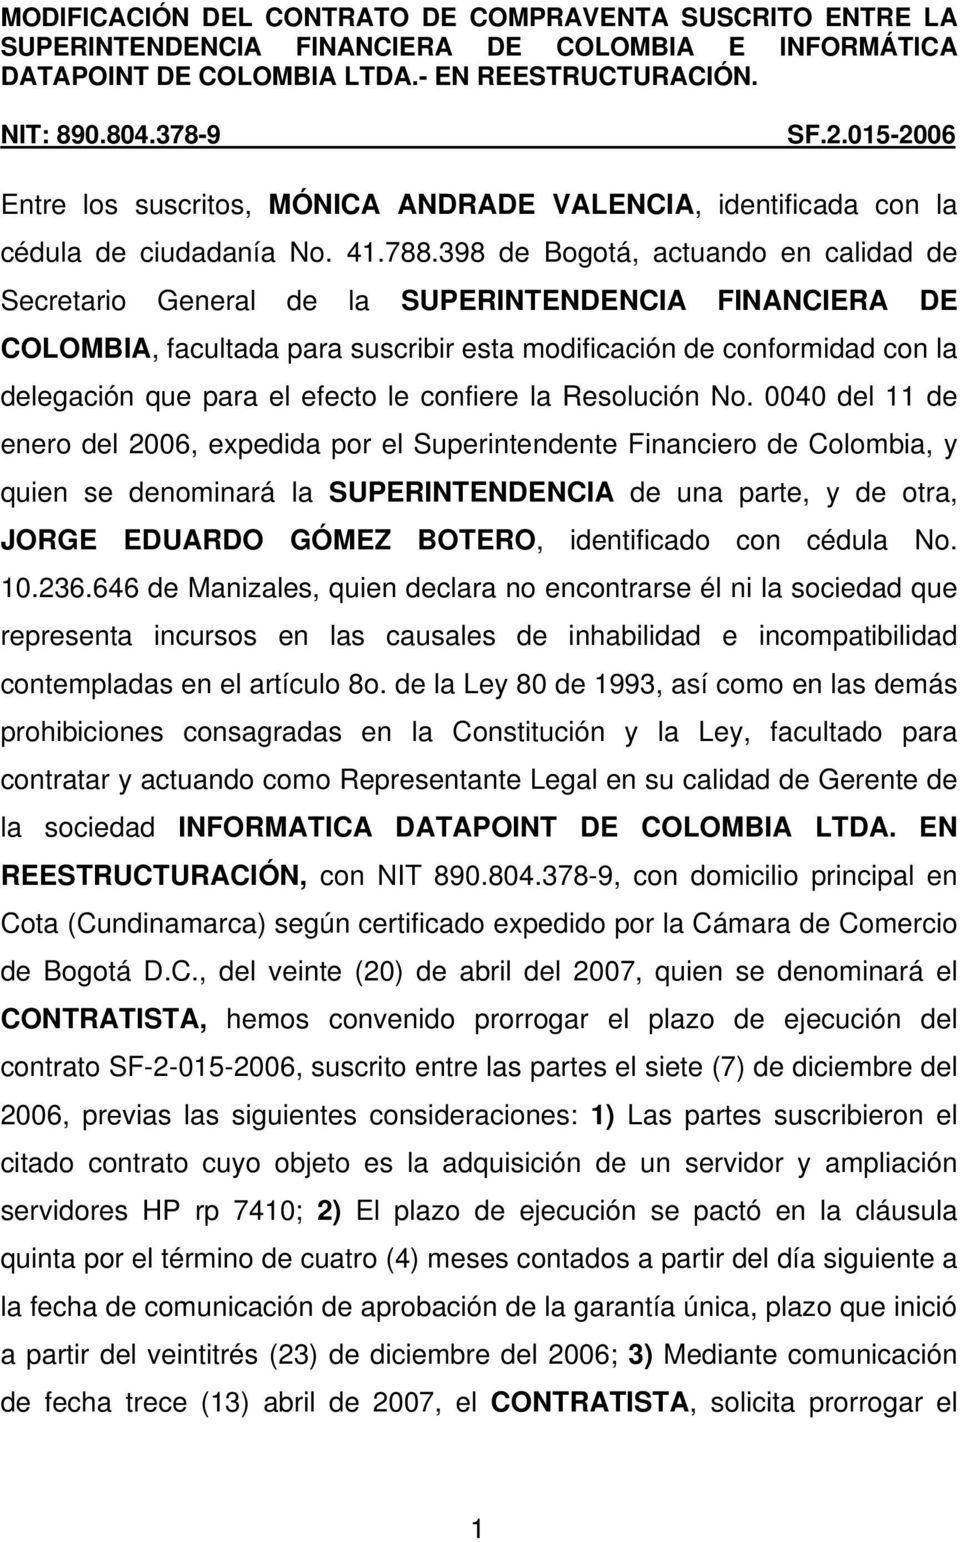 398 de Bogotá, actuando en calidad de Secretario General de la SUPERINTENDENCIA FINANCIERA DE COLOMBIA, facultada para suscribir esta modificación de conformidad con la delegación que para el efecto